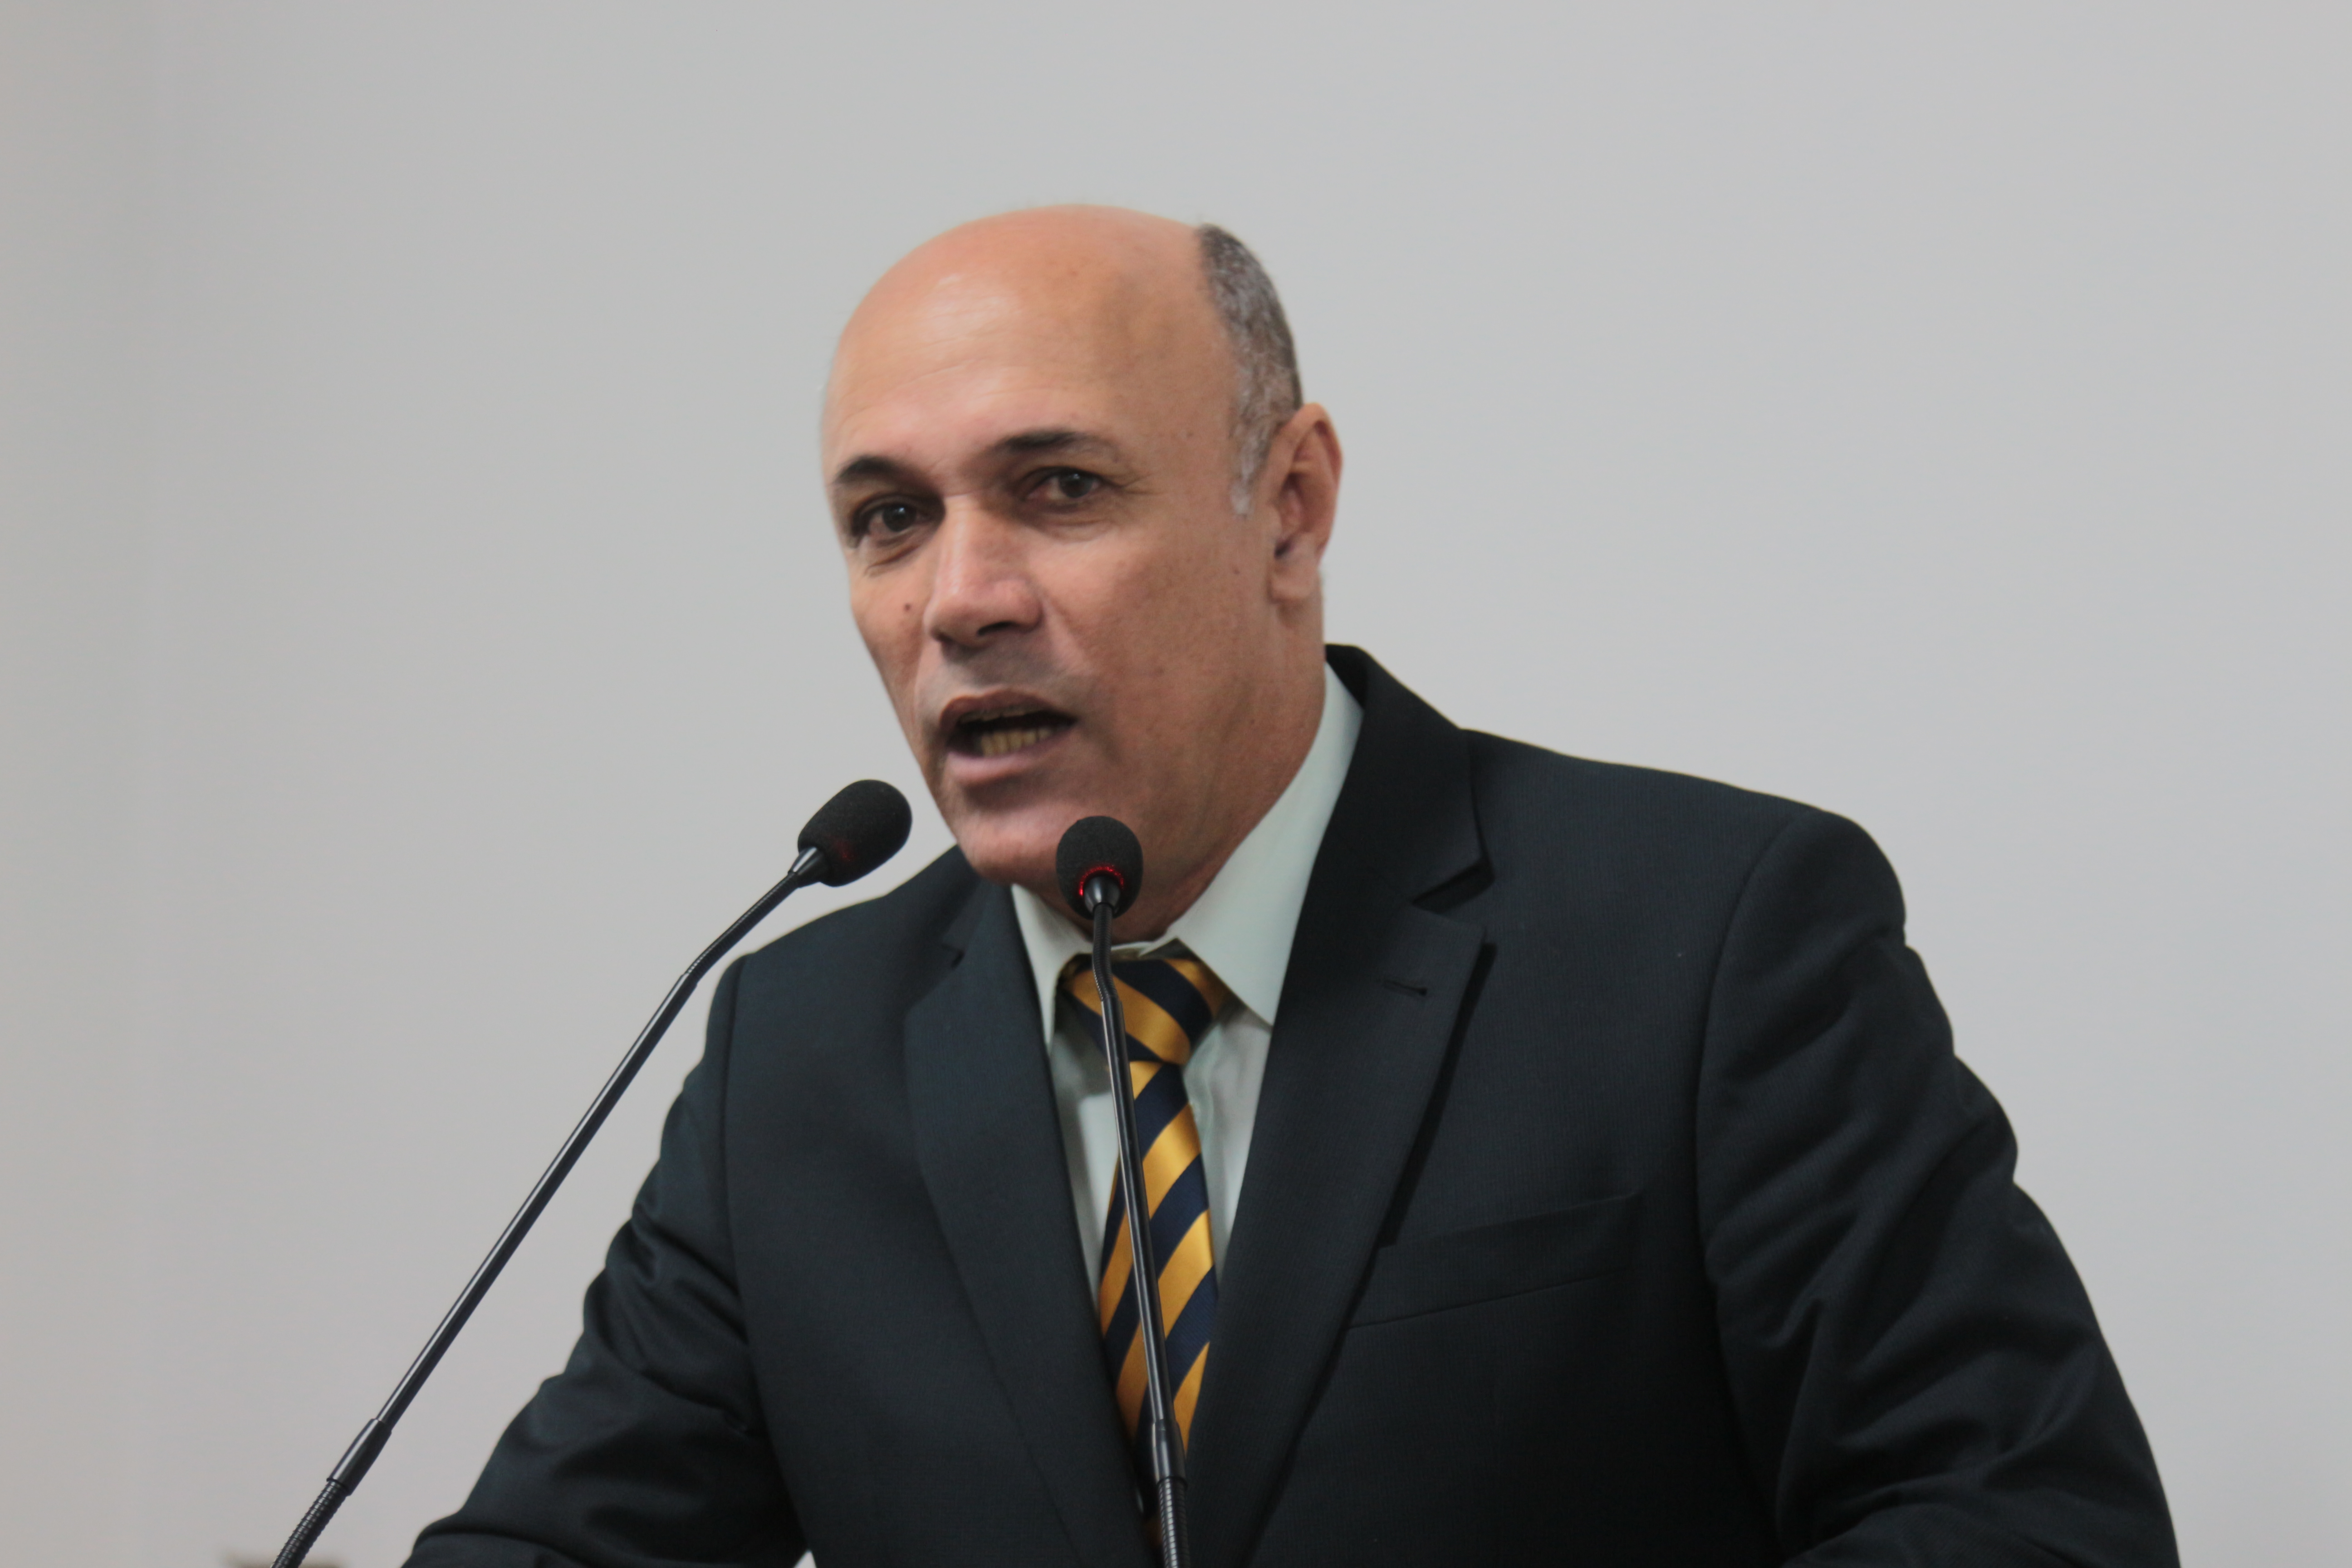 Jakson critica regionalização de presídio: “Anápolis receberá presos de alta periculosidade”